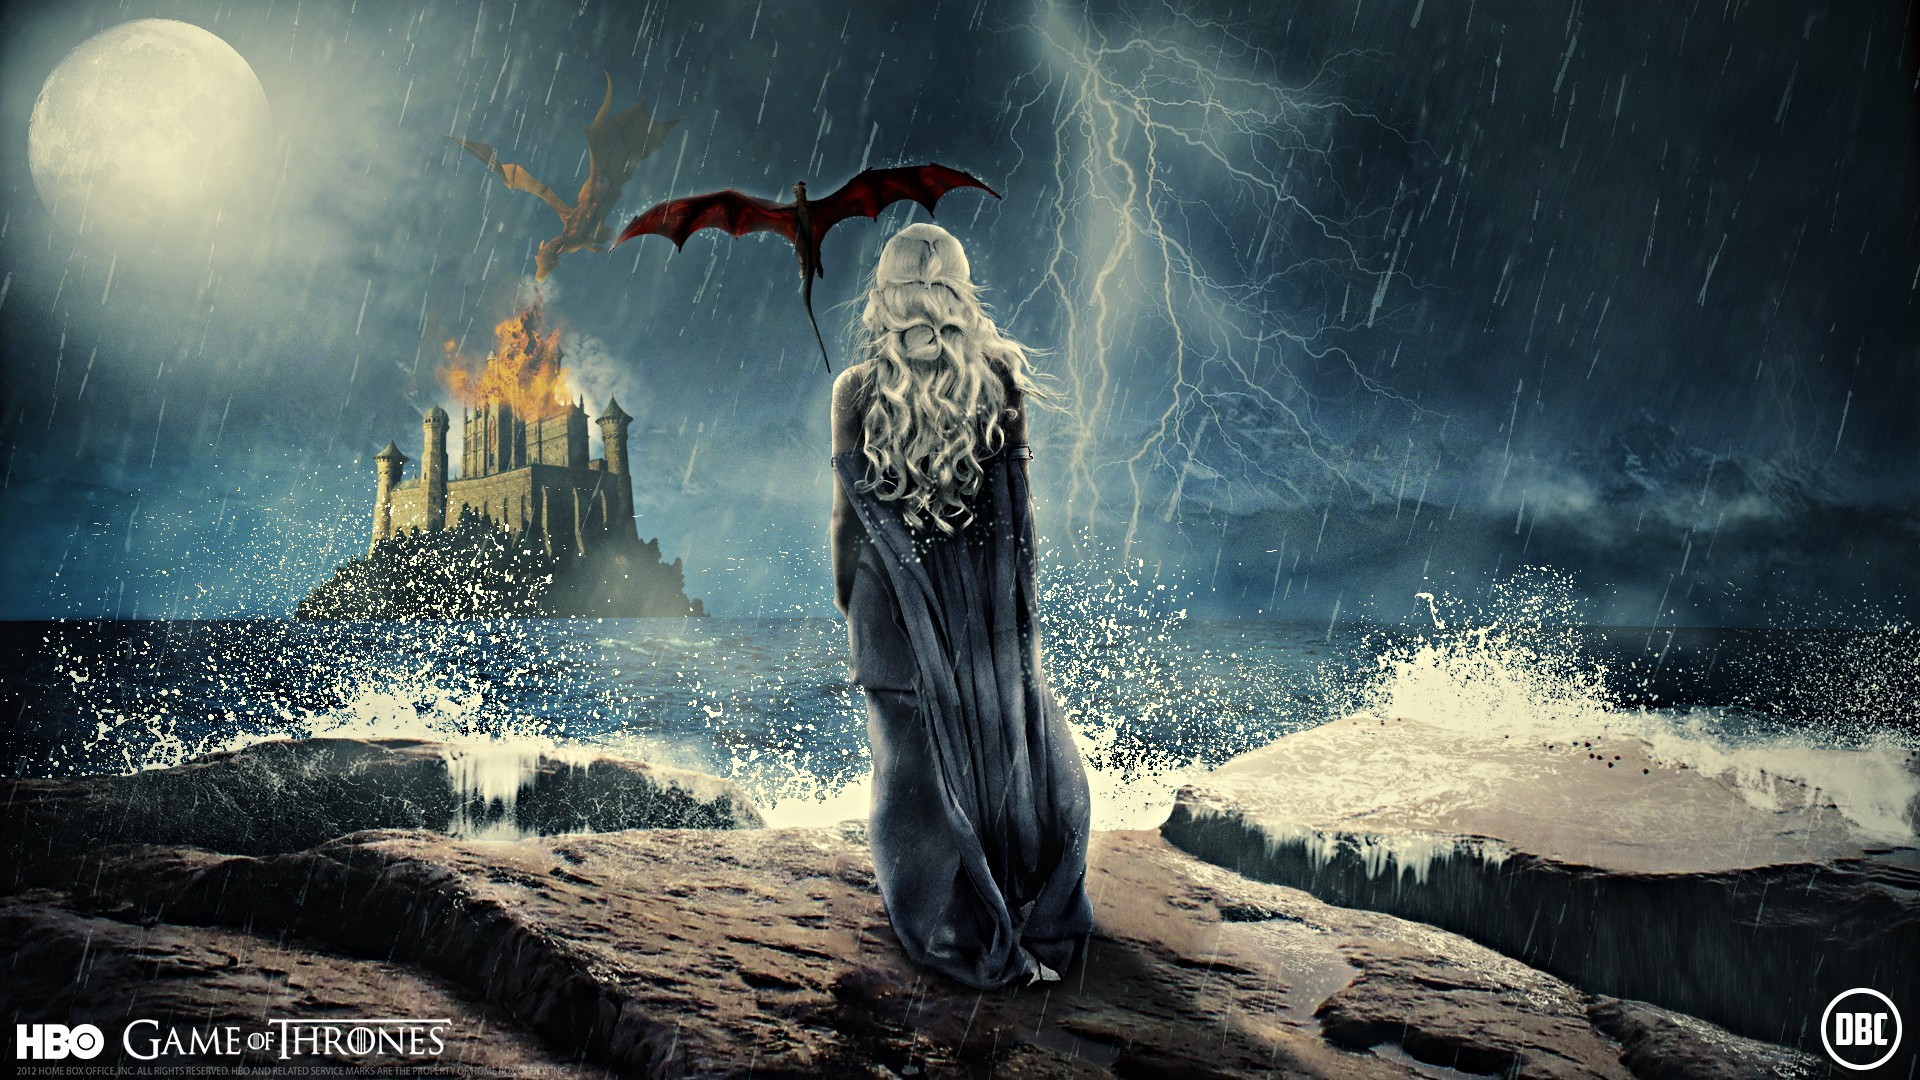 1920x1080  wallpaper dragons ÃÂ· artwork ÃÂ· Game of Thrones Â· Download .